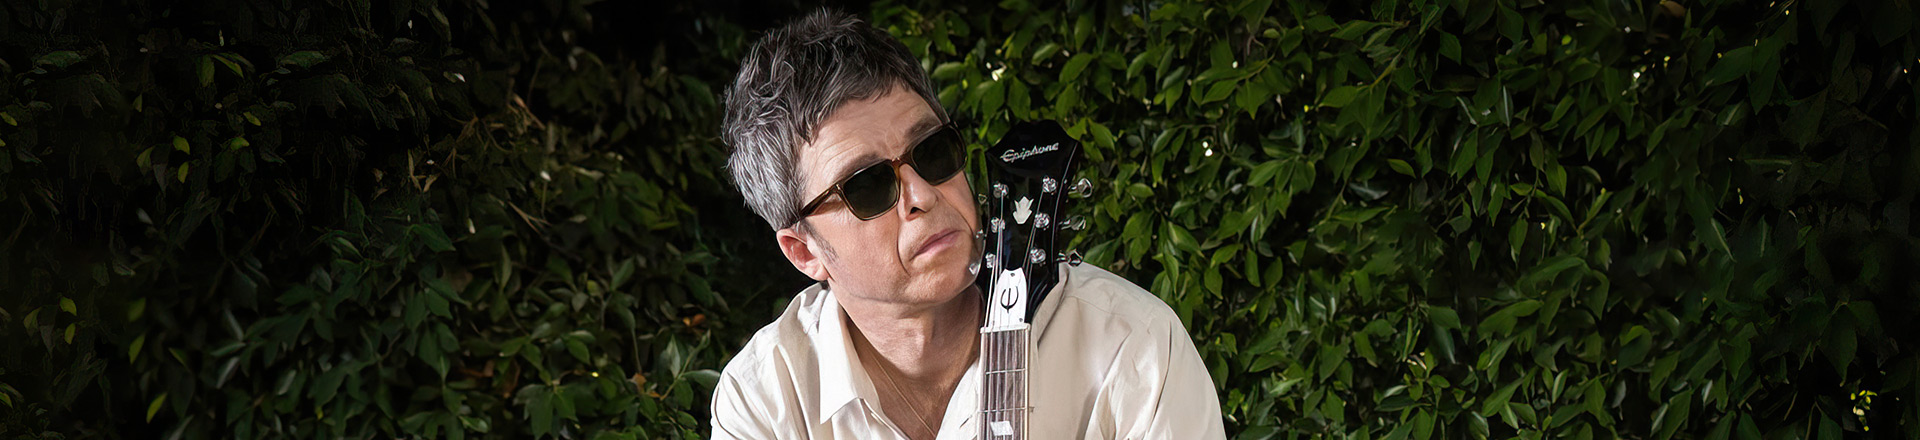 Epiphone oraz Noel Gallagher prezentują sygnowaną Riverę